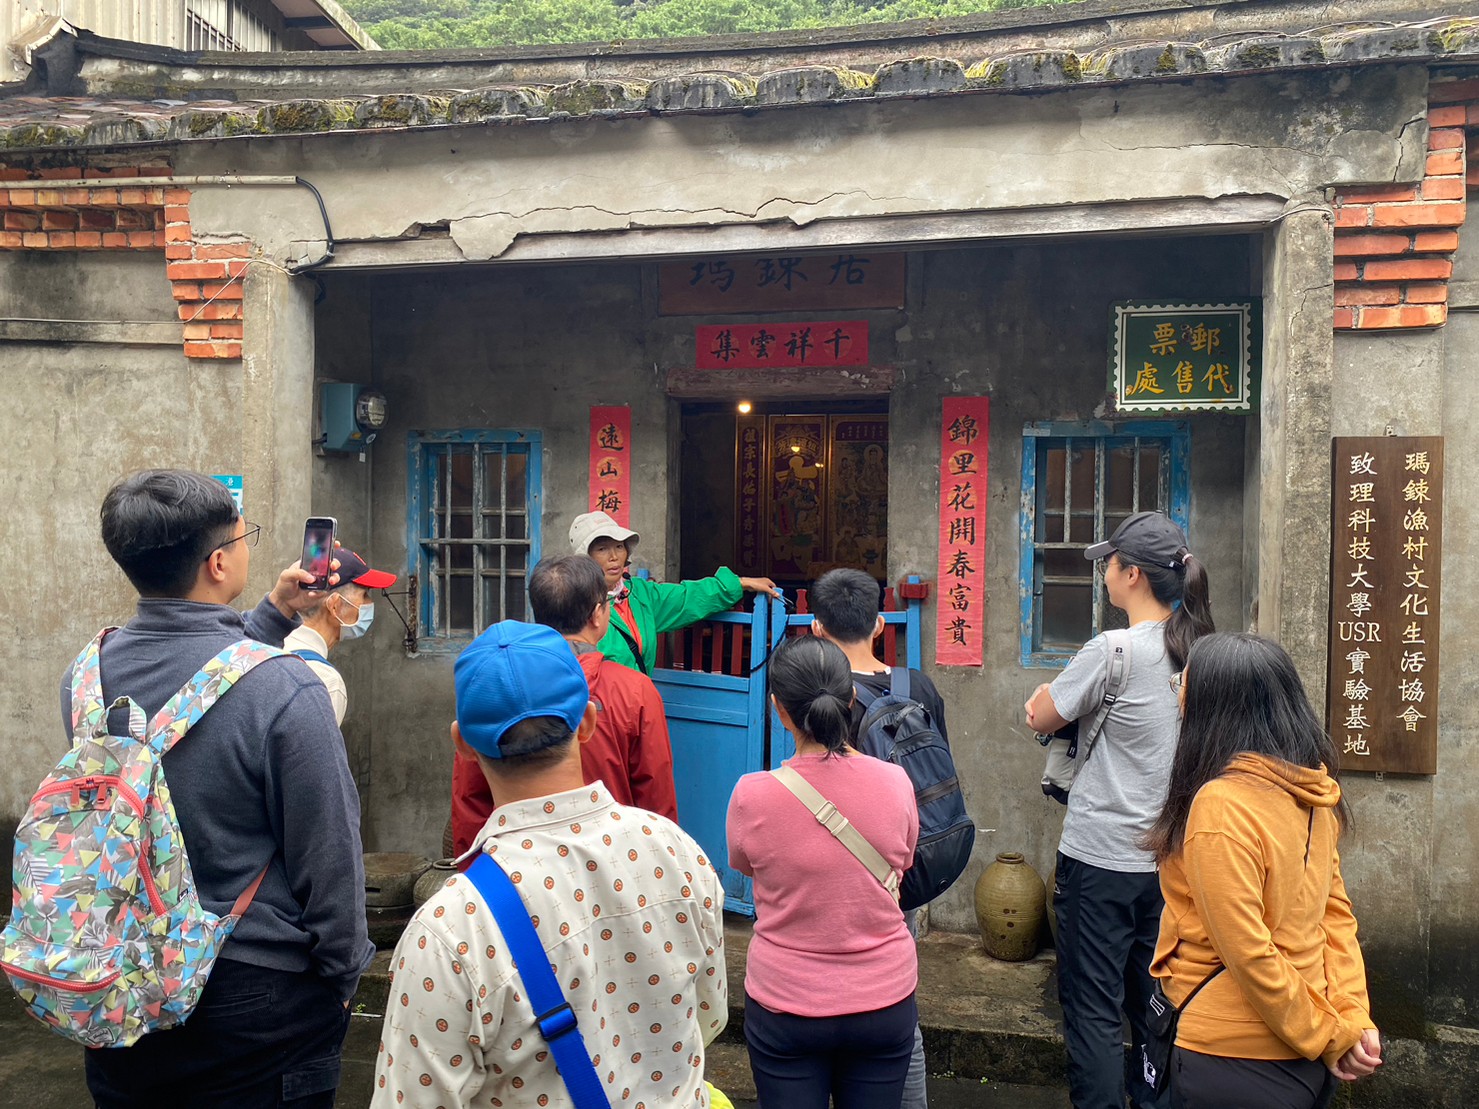 漁村小旅行帶領民眾走訪當地閩南式建築「瑪鋉居」